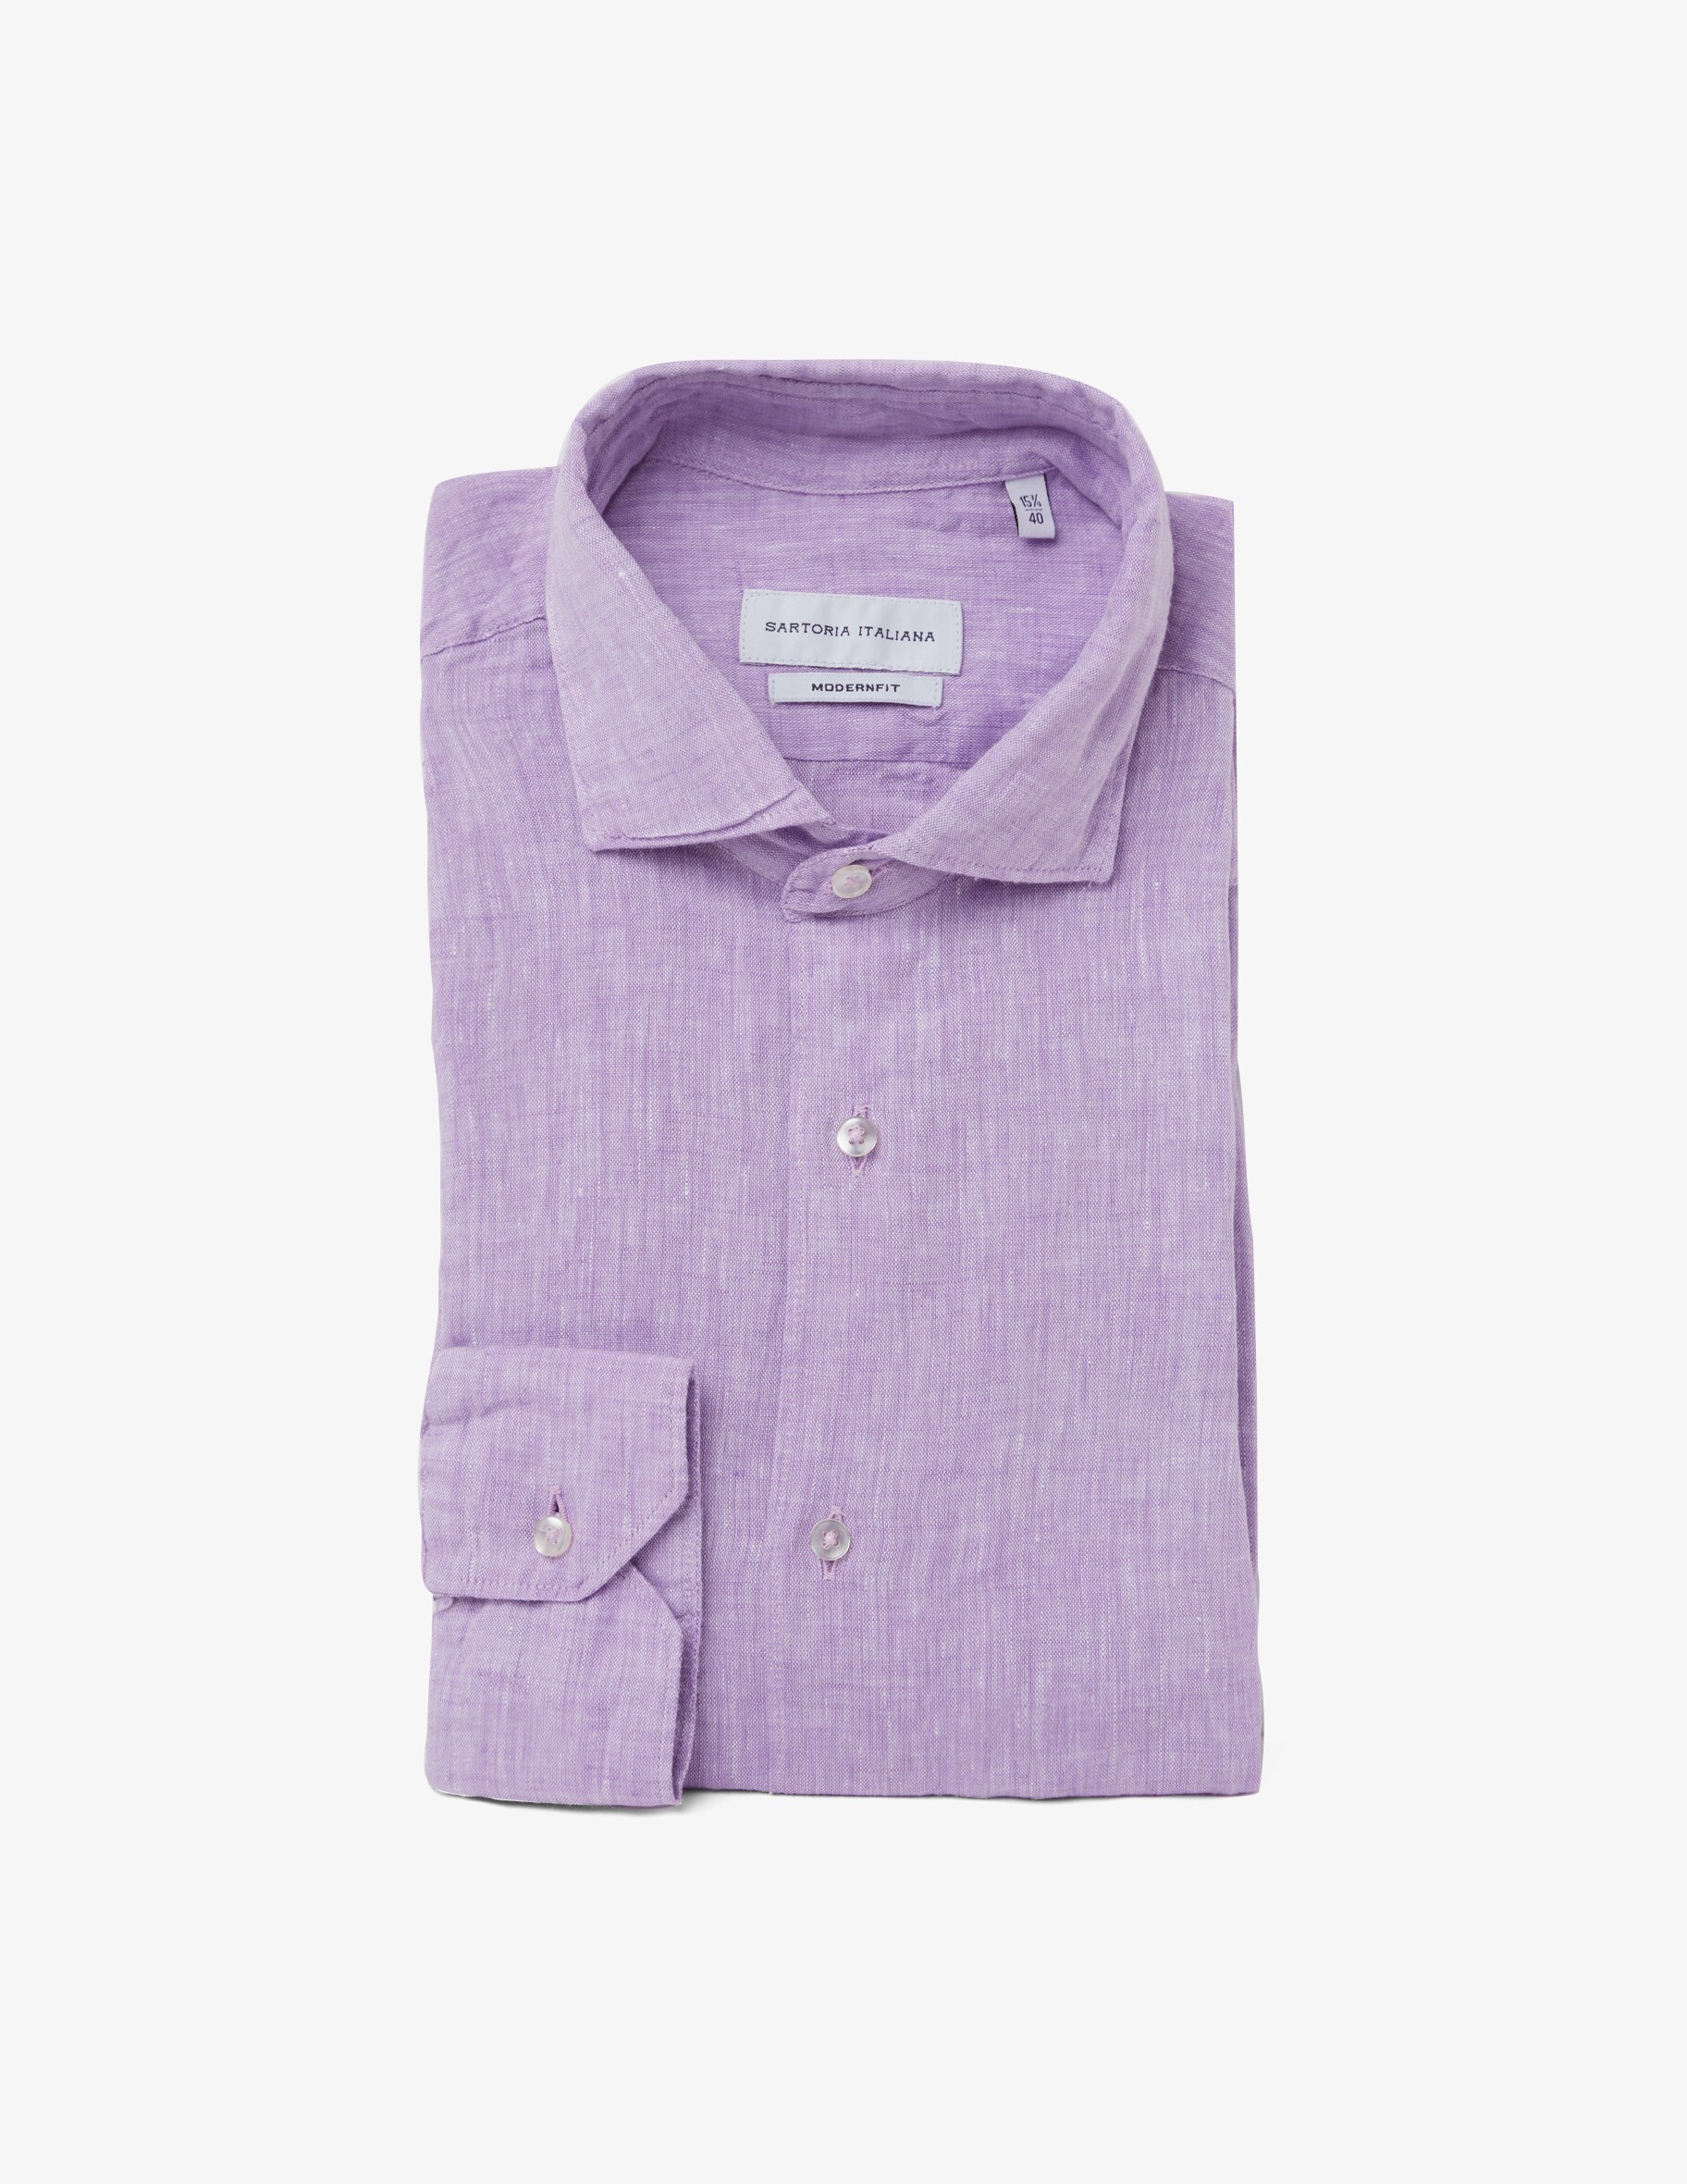 Современная льняная рубашка Sartoria Italiana, фиолетовый